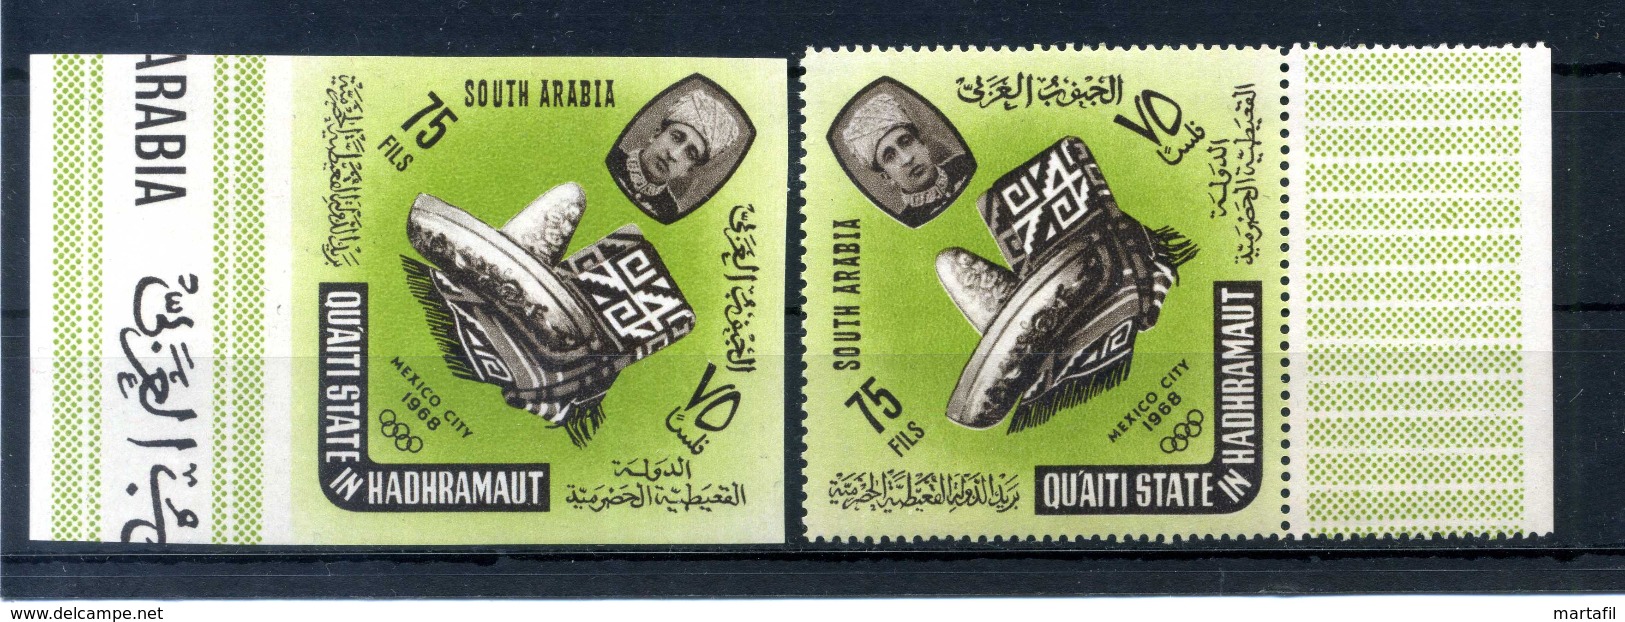 1966 Arabia (South Arabia) Qu'aiti State In Hadhramaut MNH ** SC1V + IMPERF - Arabia Saudita